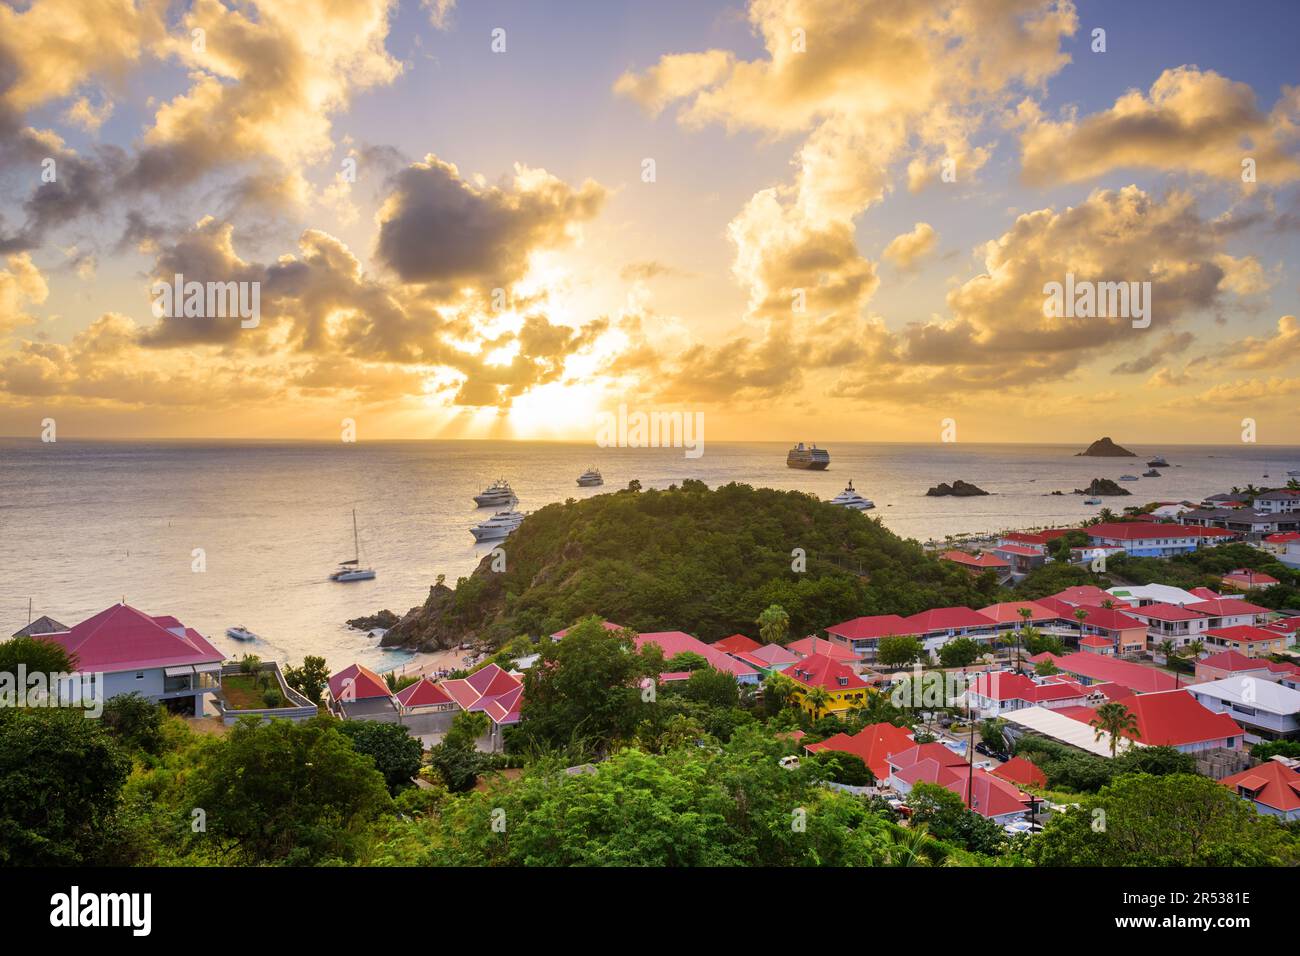 Gustavia, côte de St Barts dans les Antilles de la mer des Caraïbes au coucher du soleil. Banque D'Images